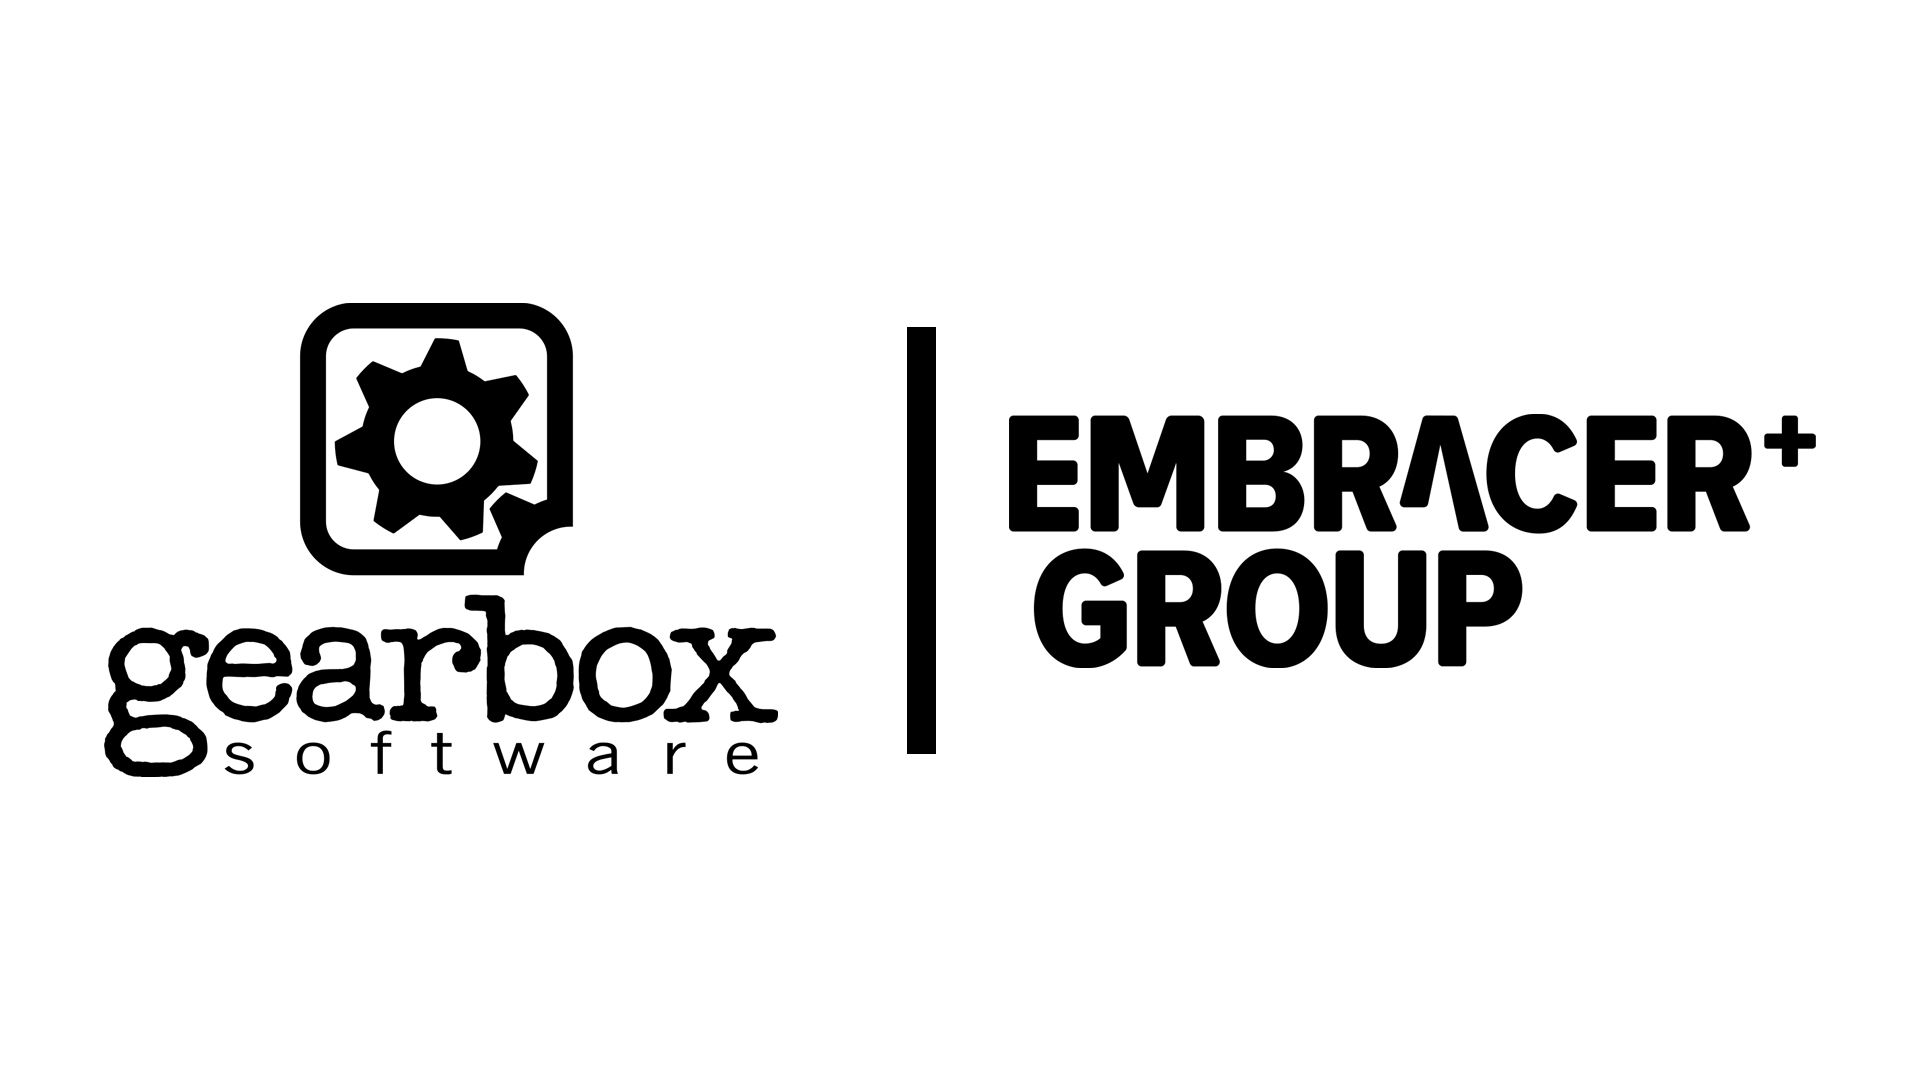 发行商团体Embracer Group已收购7家新工作室 包括《毁灭公爵》